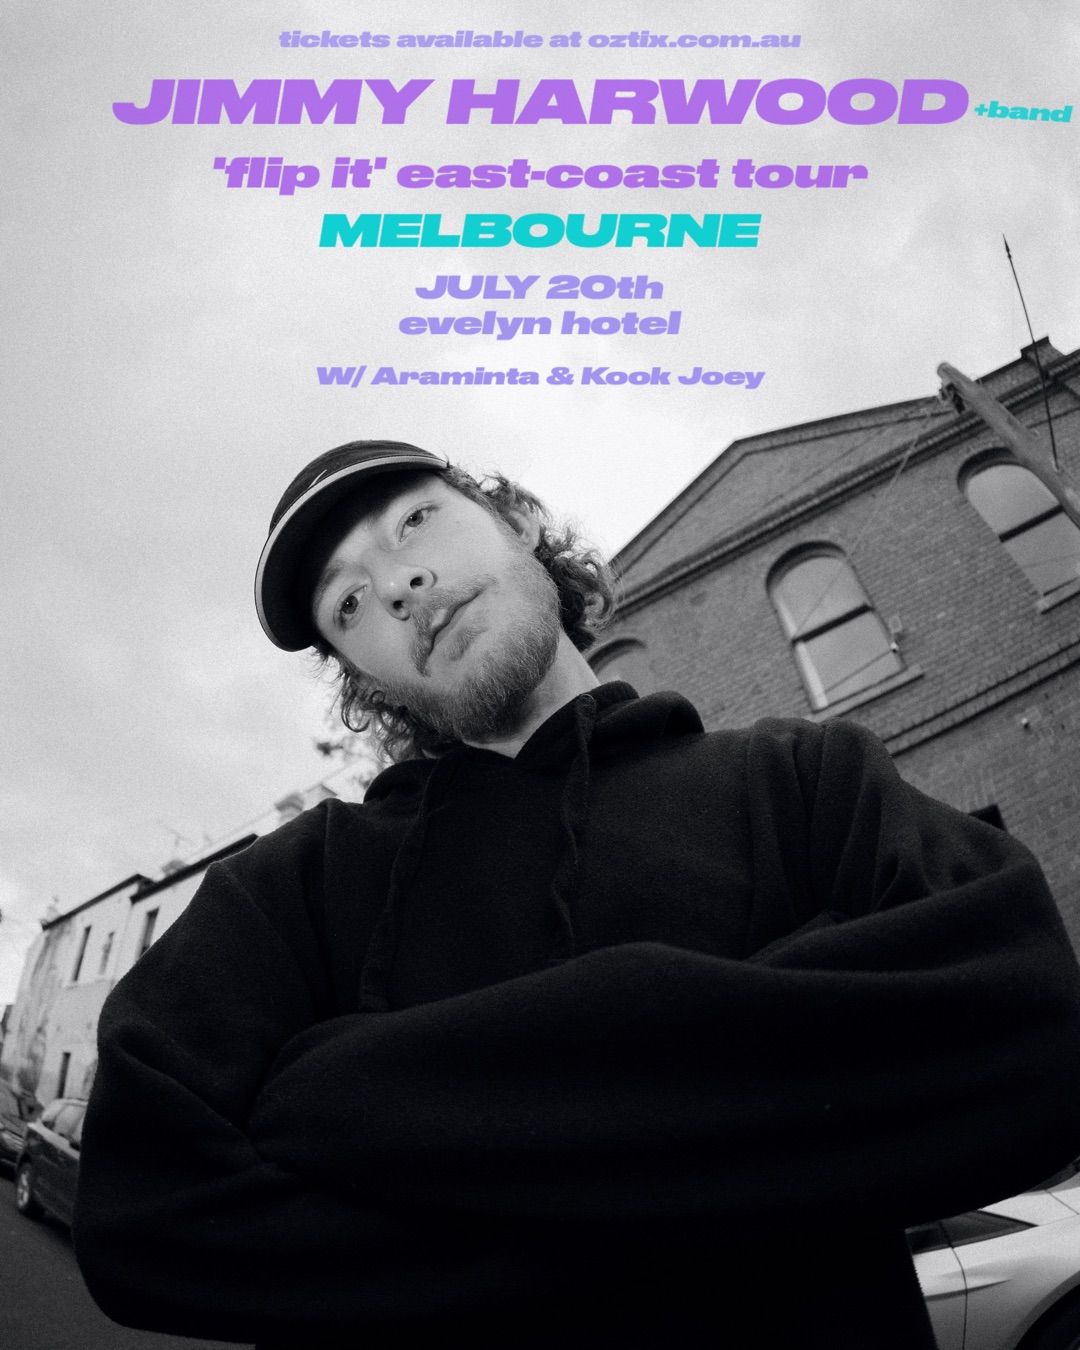 Jimmy Harwood 'FlipIt' EP Launch - Melbourne